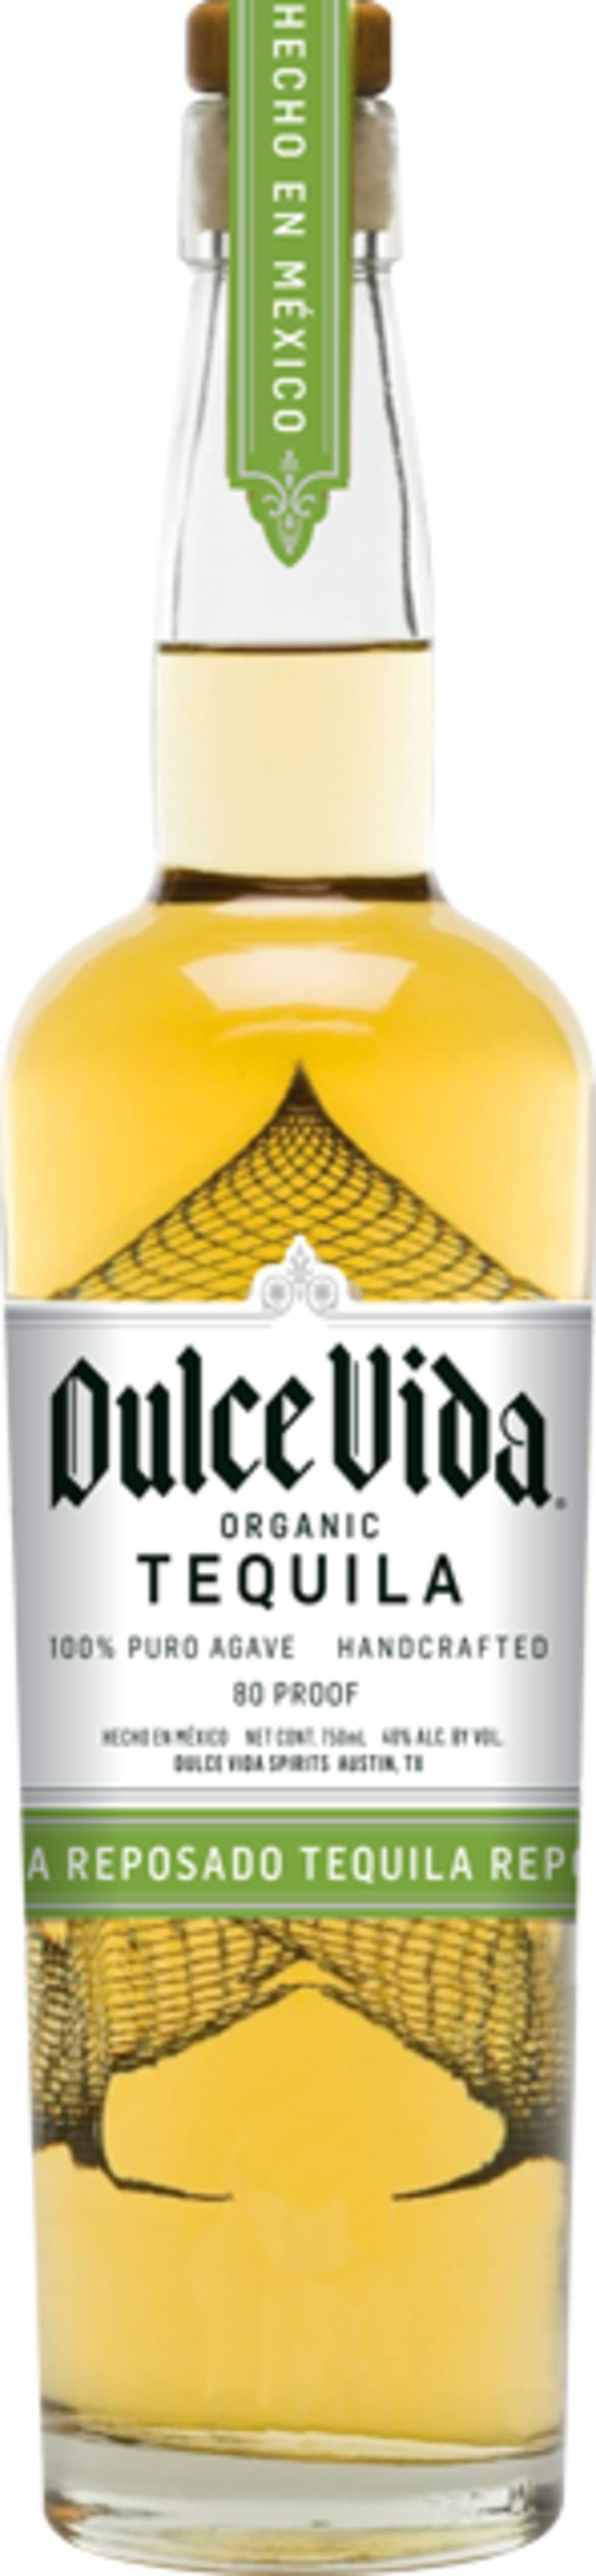 Dulce Vida Organic Reposado Tequila | Wine.com | Wine.com